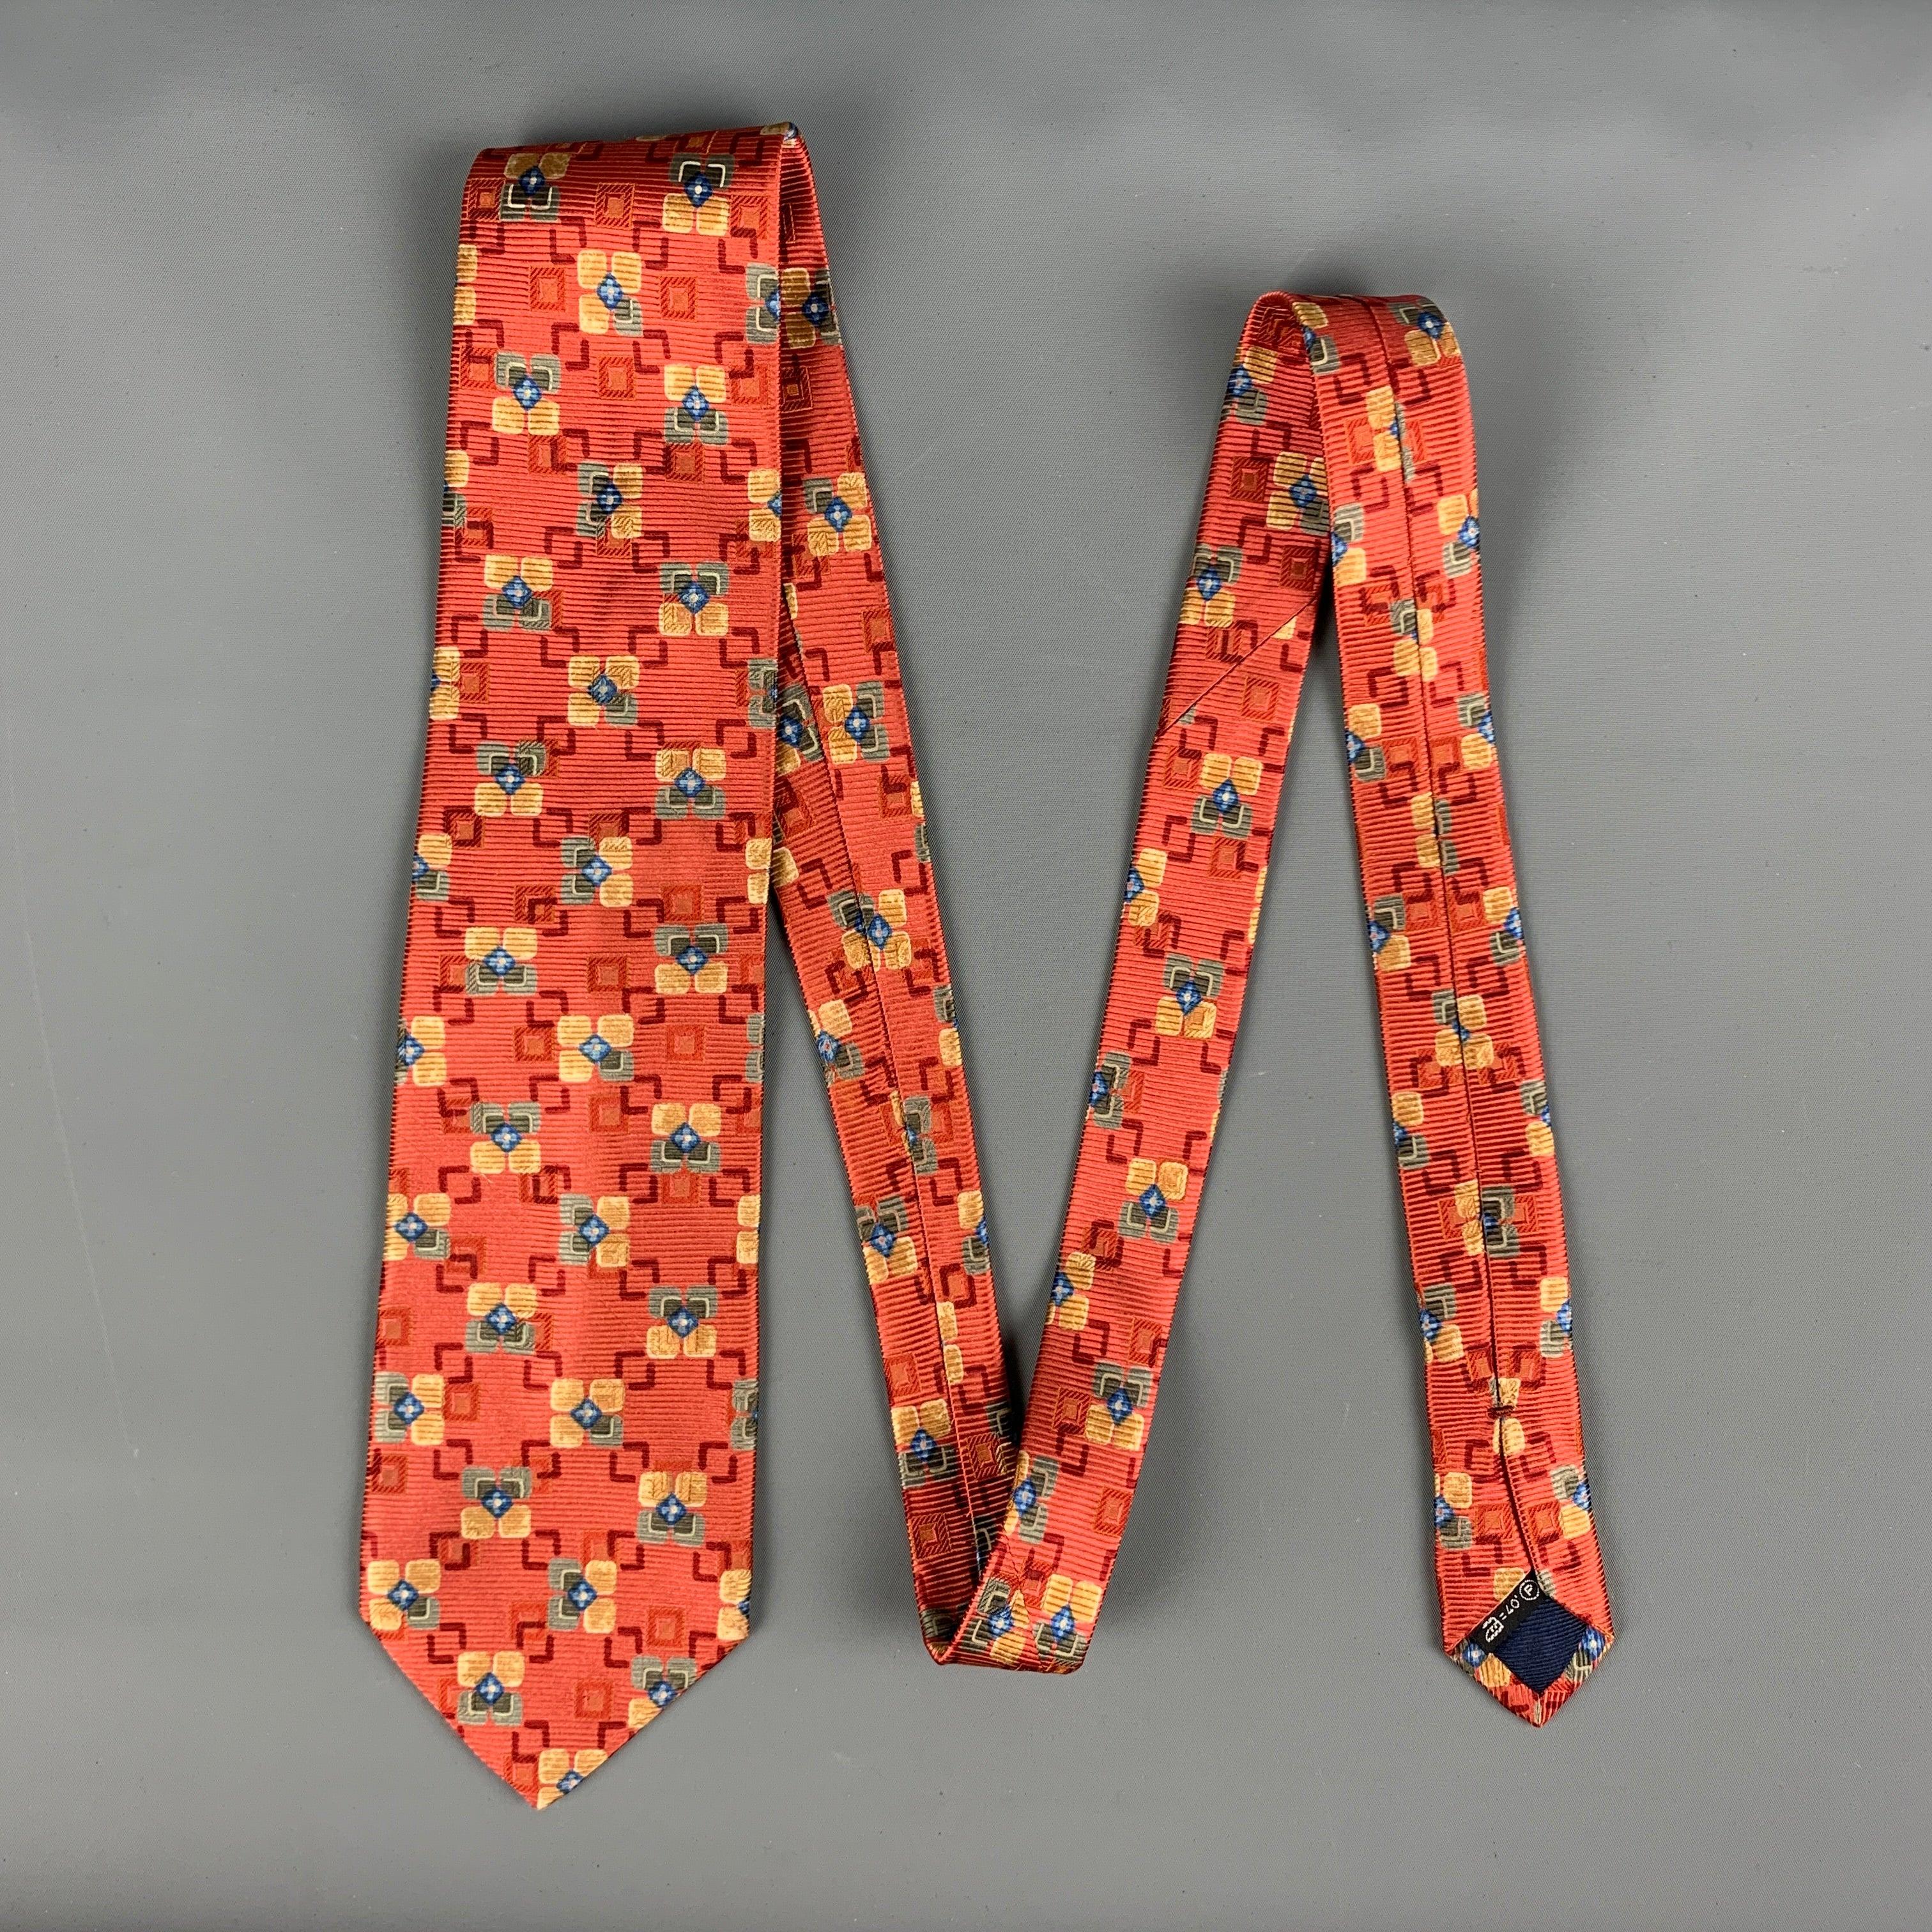 La cravate ERMENEGILDO Zegna se décline en rouge avec un imprimé floral géométrique multicolore. Fabriquées en Italie.
Très bon état d'origine.
 

Mesures : 
  Largeur : 3 pouces Longueur : 60 pouces 

  
  
 
Référence Sui Generis :